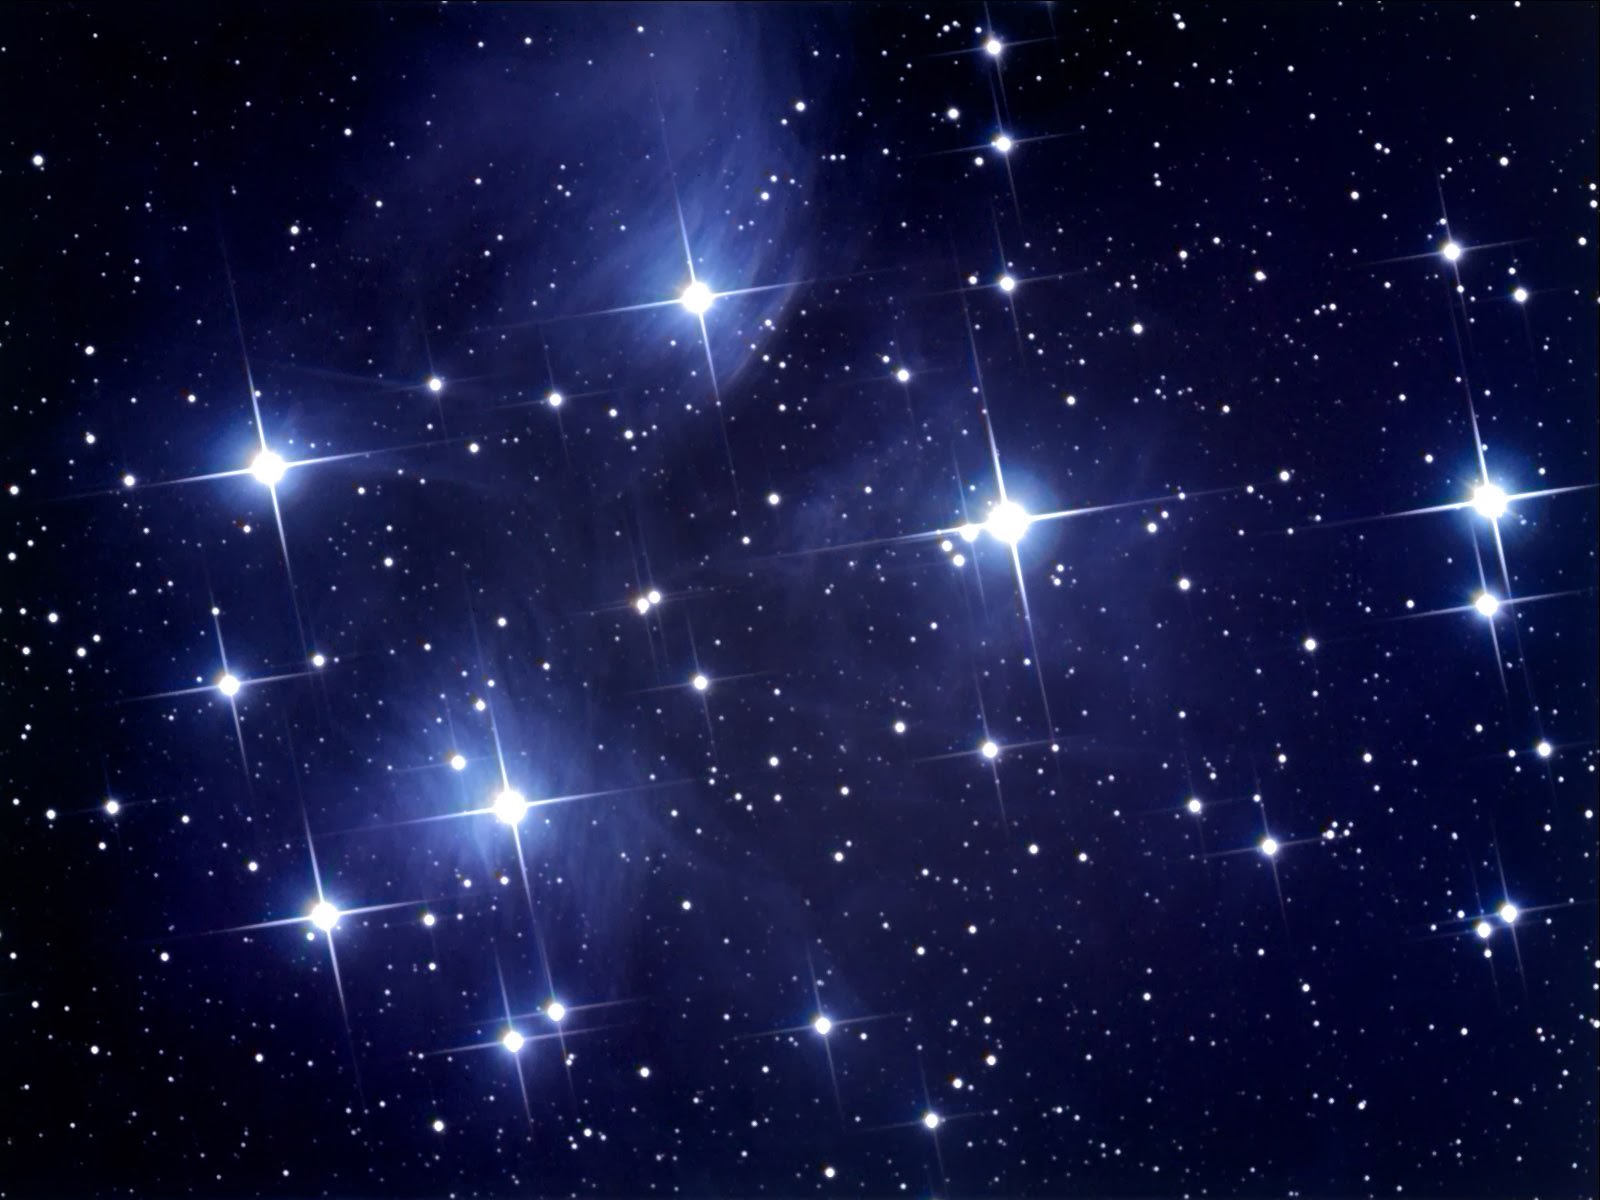 النجوم في السماء , النجم الساطع له بريقه المنام